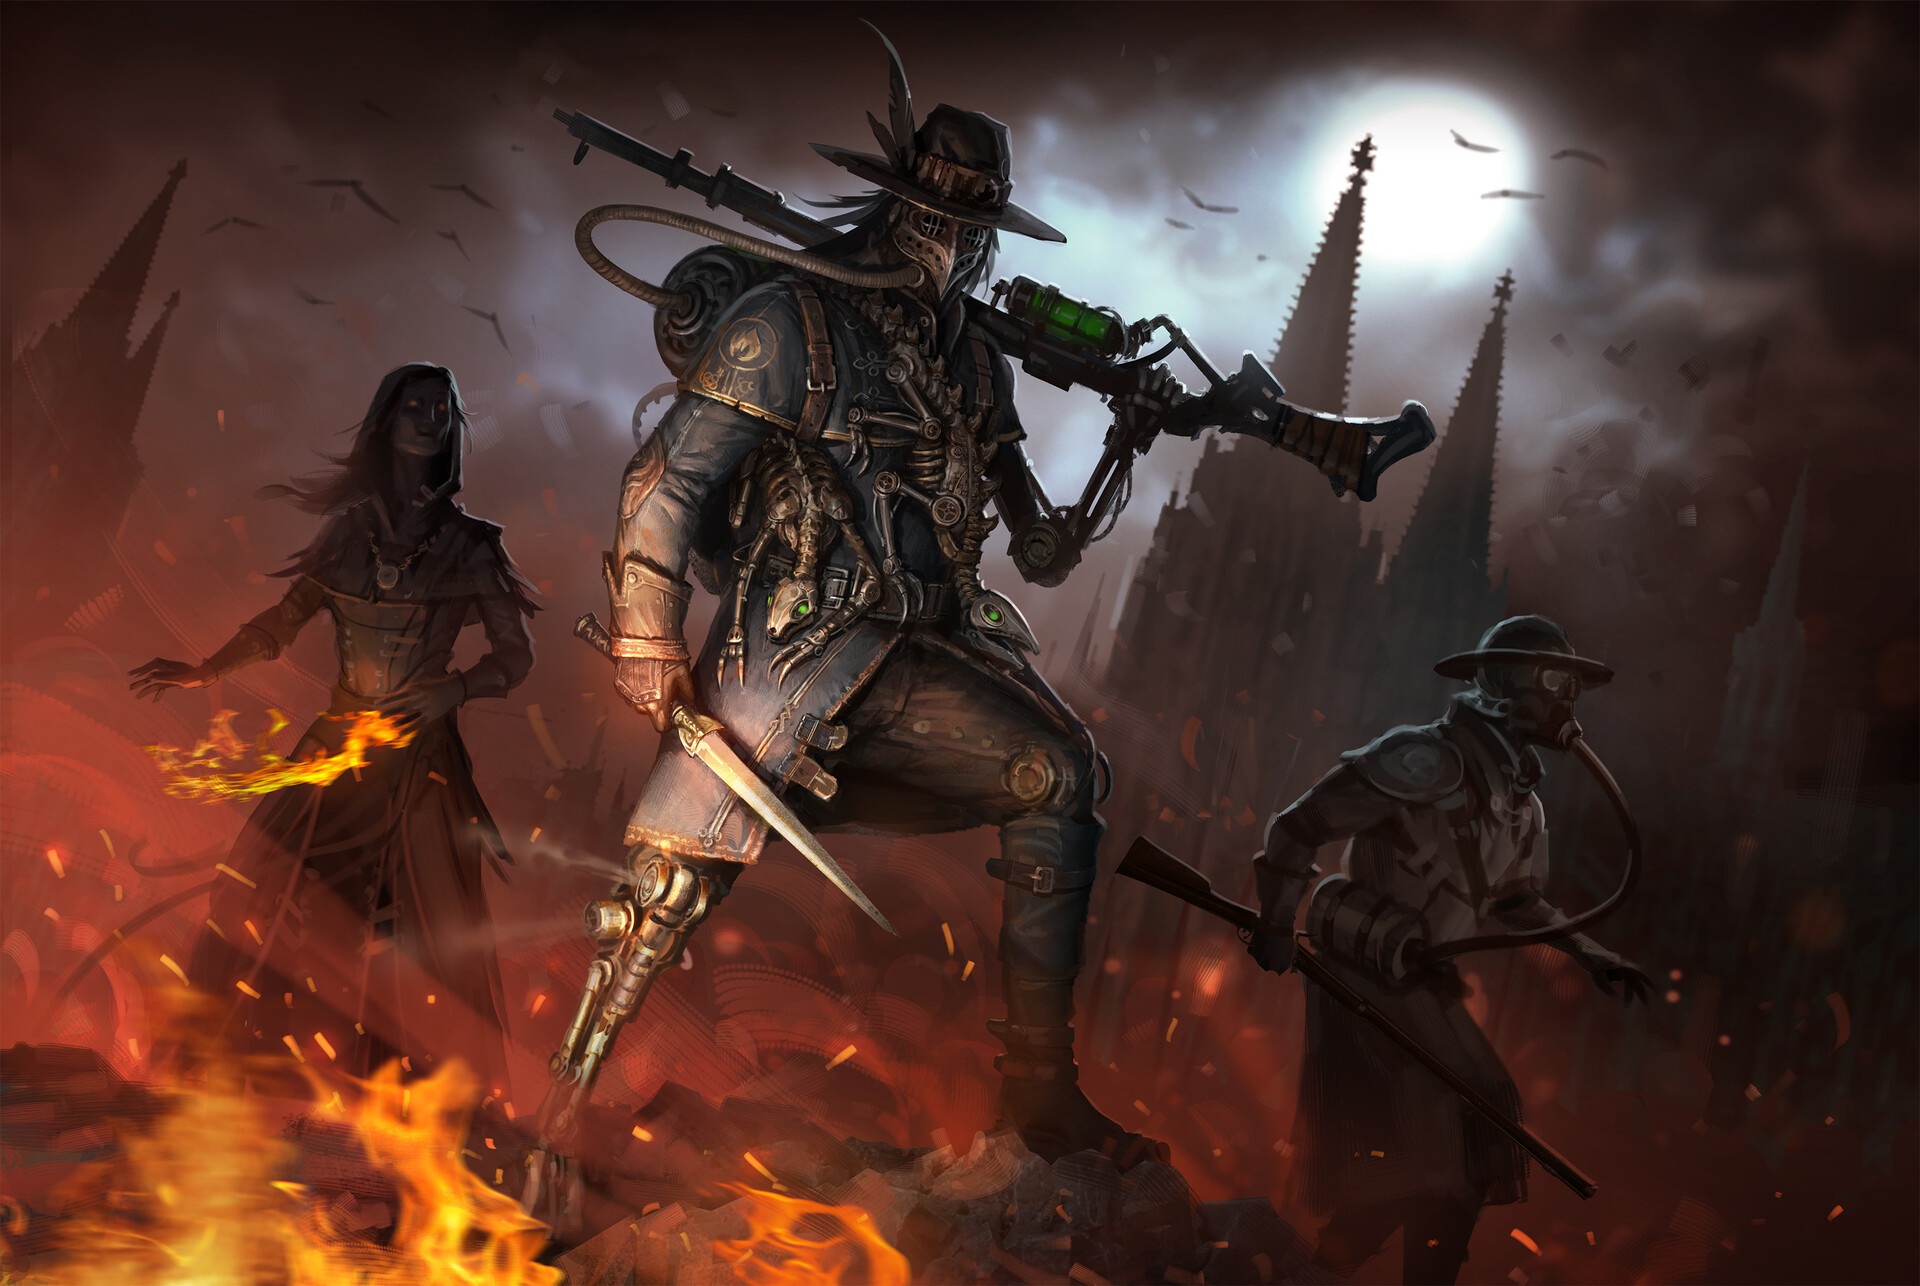 Free download wallpaper Dark, Warrior, Steampunk, Witch on your PC desktop